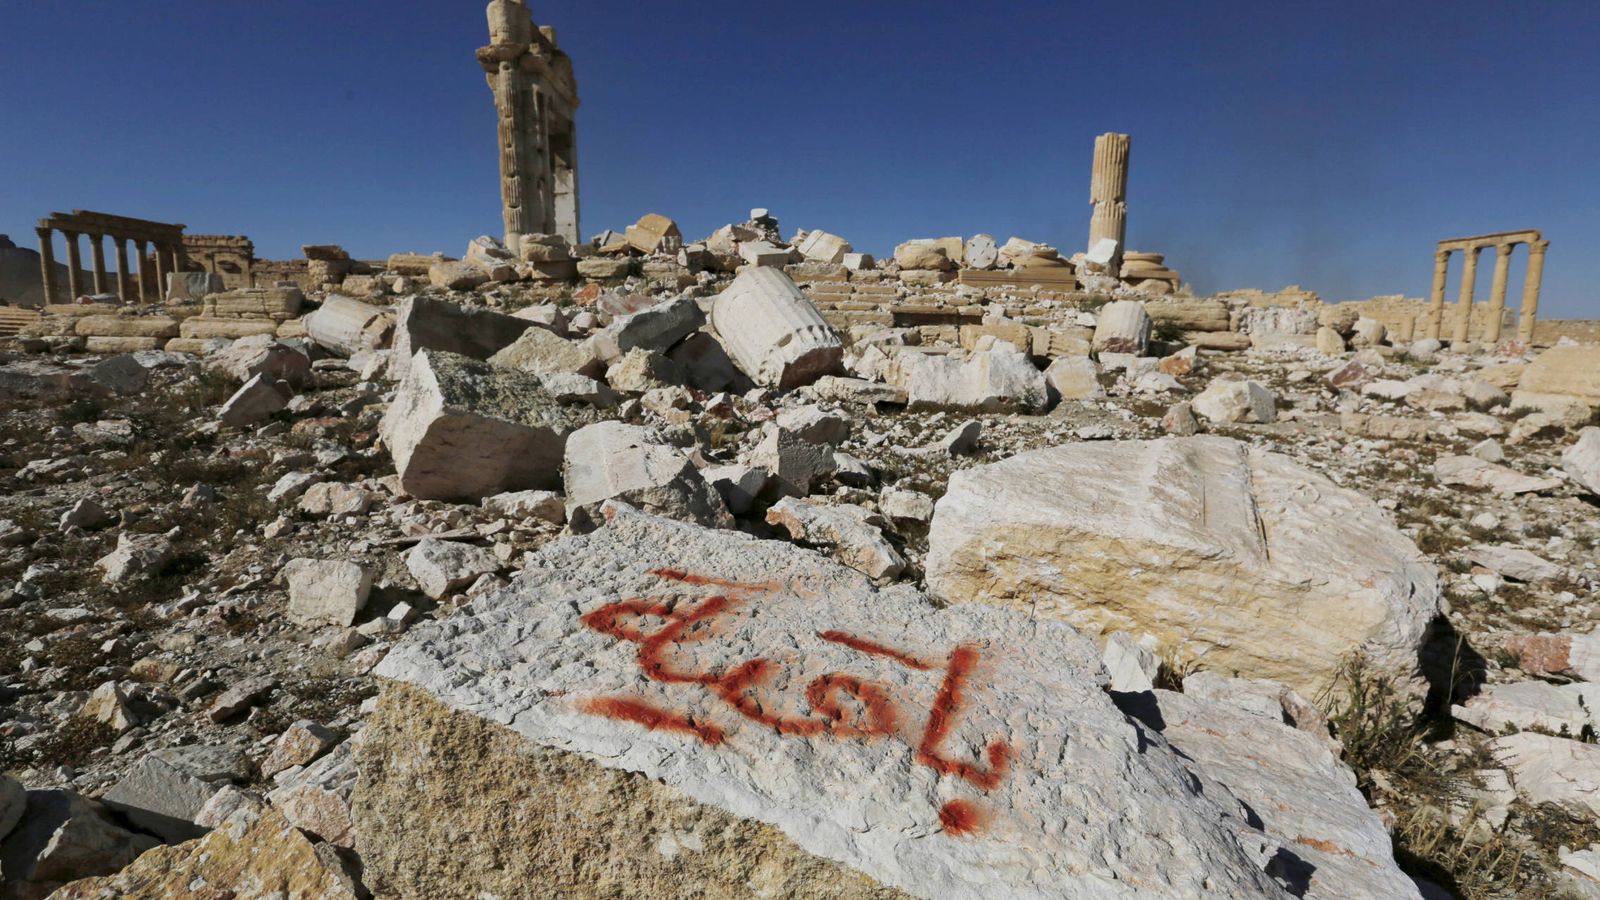 Foto: Los restos del templo de Bel, en Palmira, dinamitado por Daesh. En el grafiti puede leerse "Permaneceremos". (Reuters)